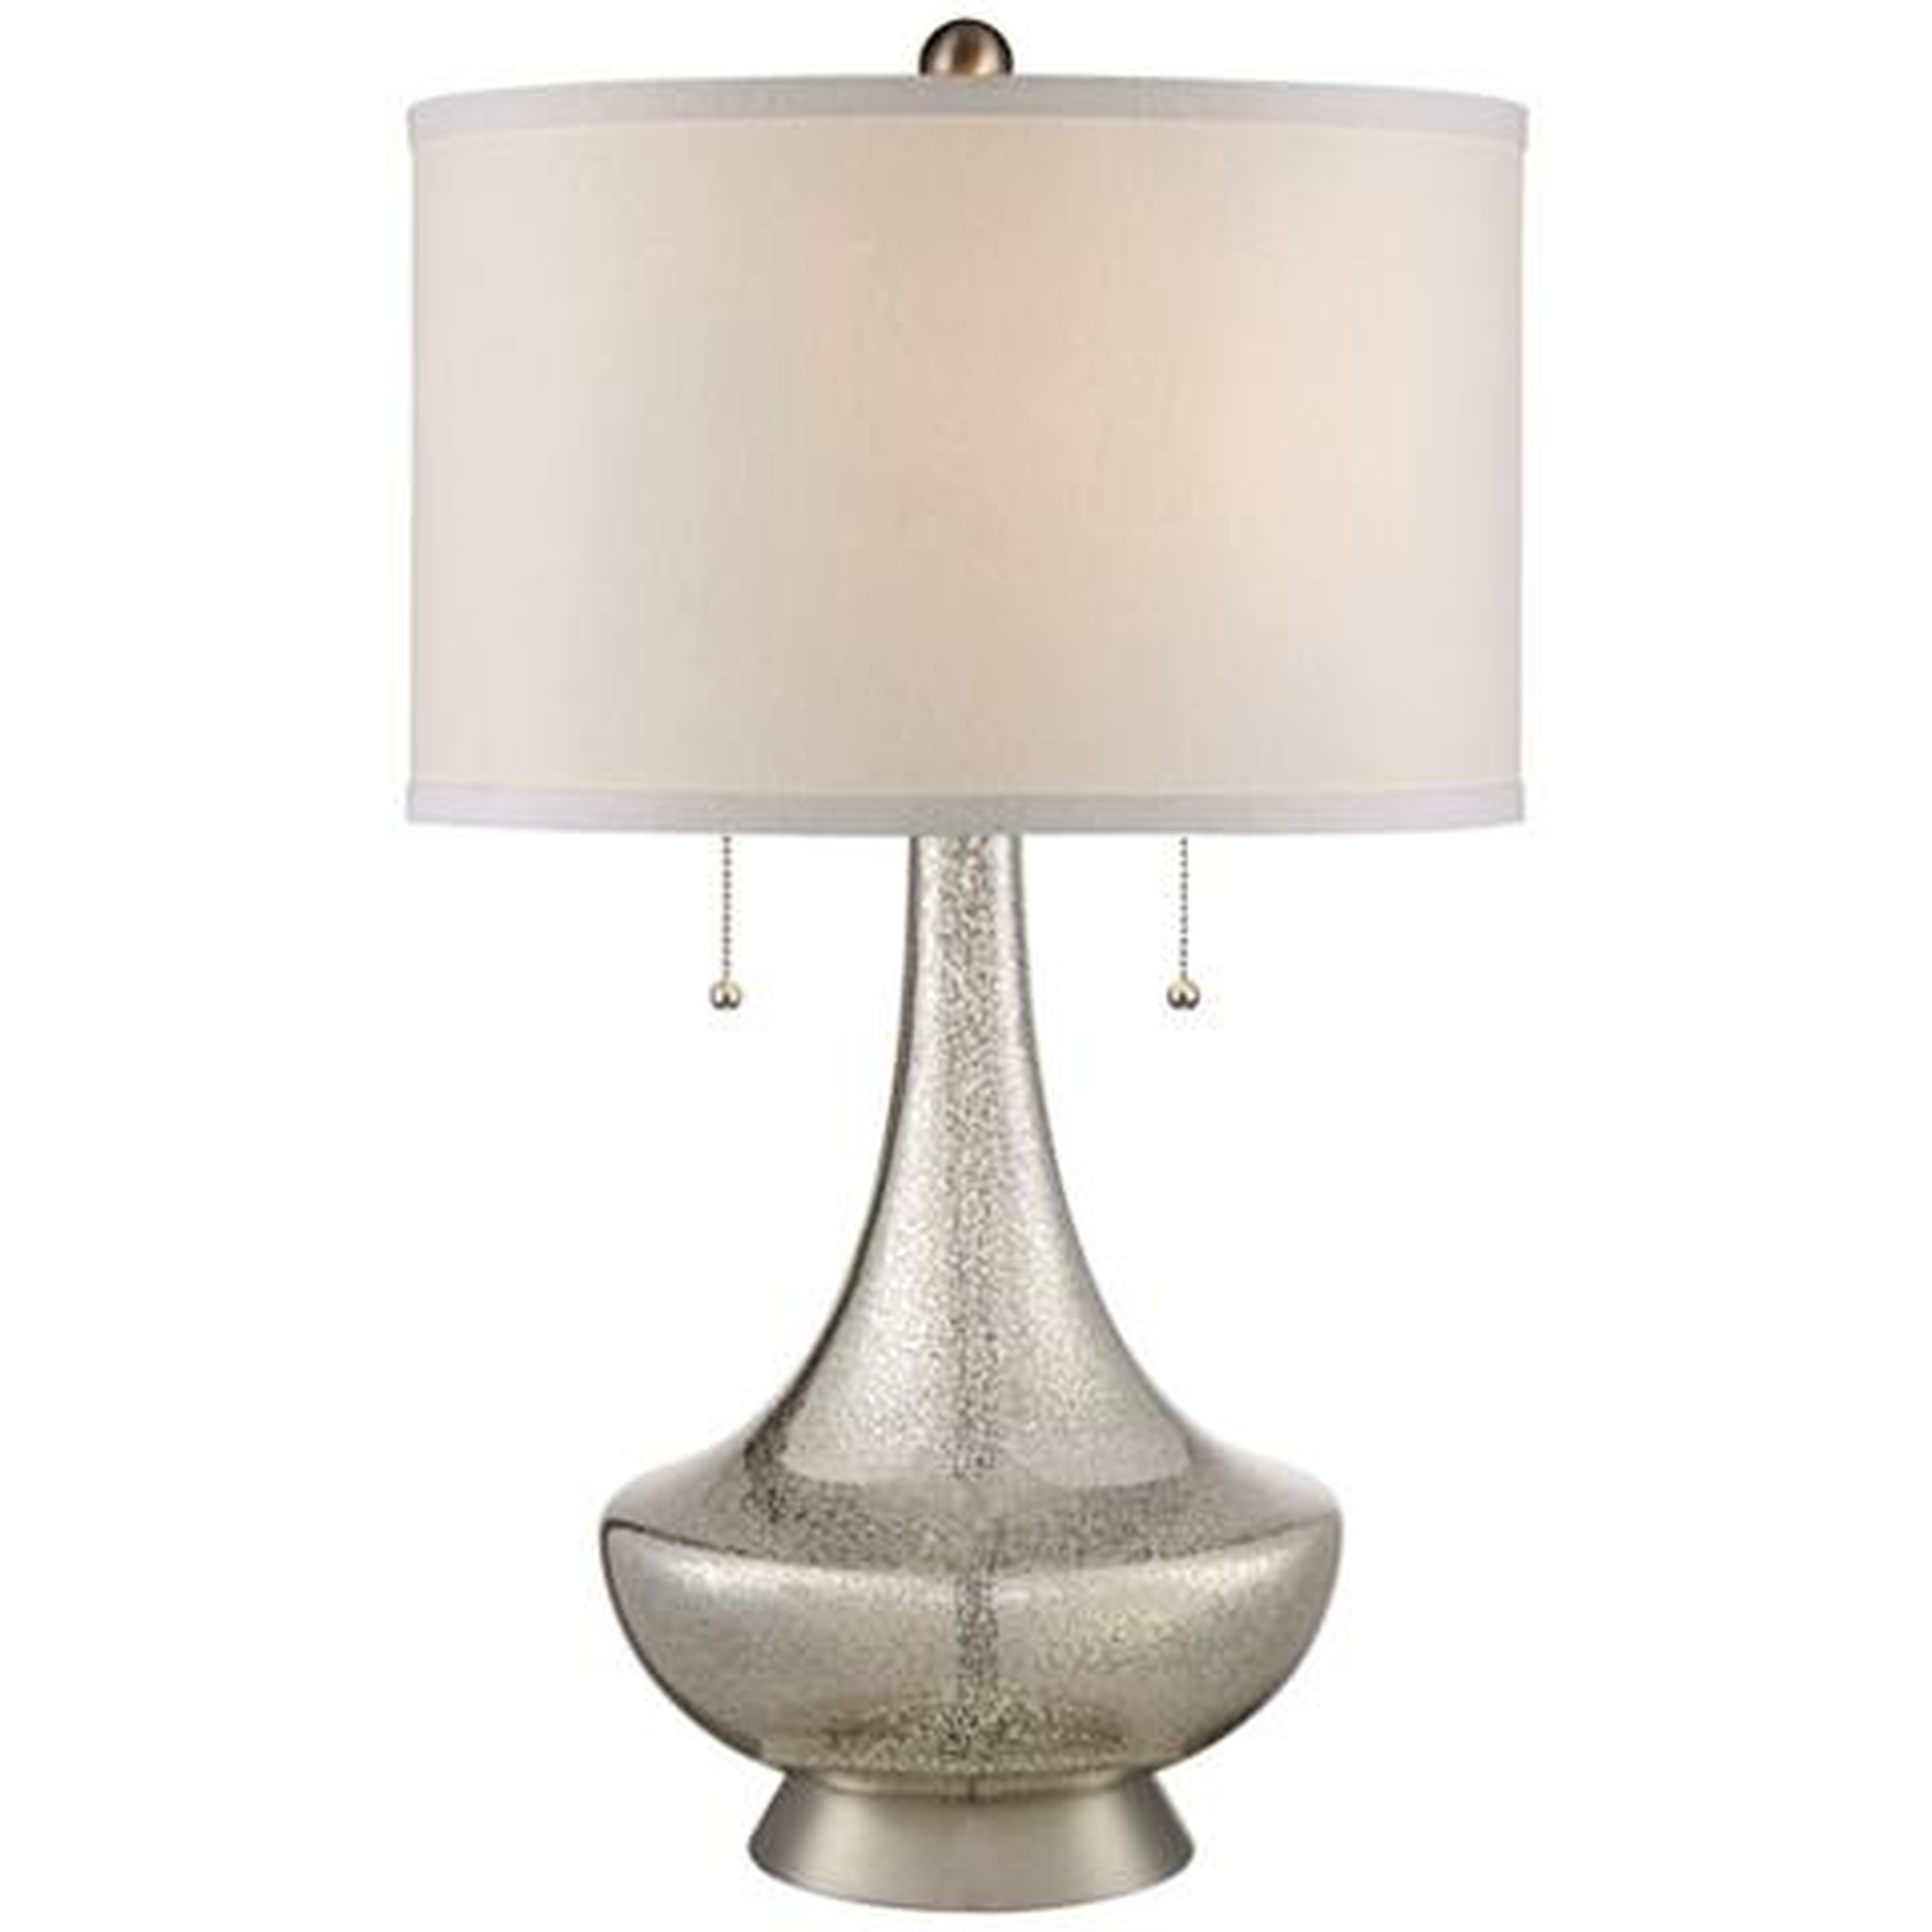 Trixie Mercury Glass Table Lamp - Lamps Plus